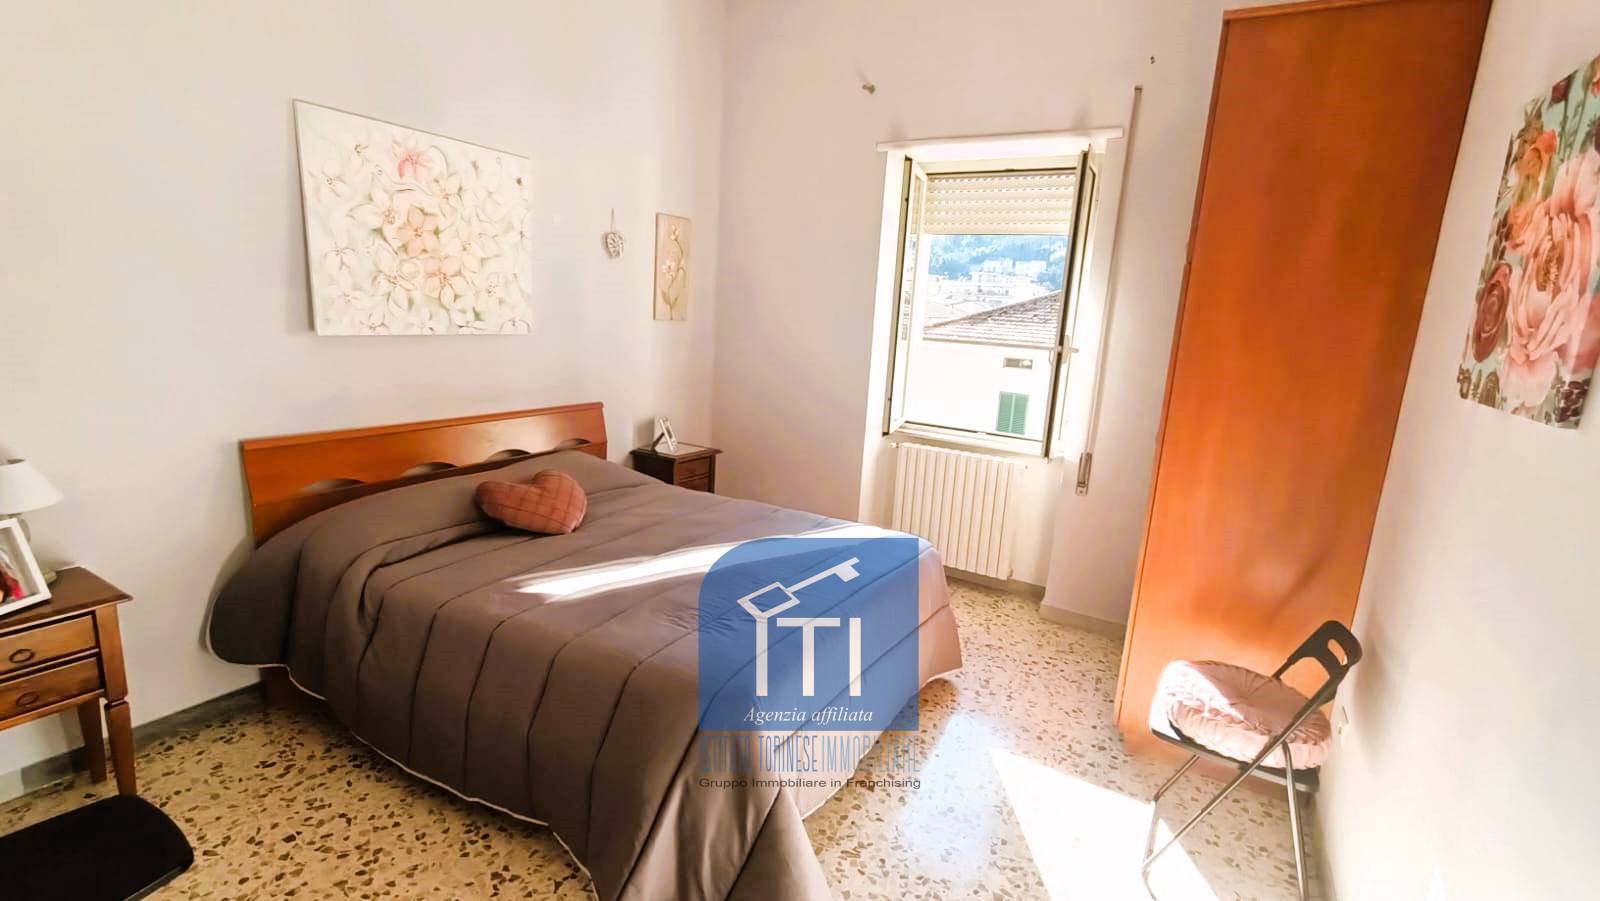 Appartamento in affitto a Cassino, 2 locali, prezzo € 300 | PortaleAgenzieImmobiliari.it